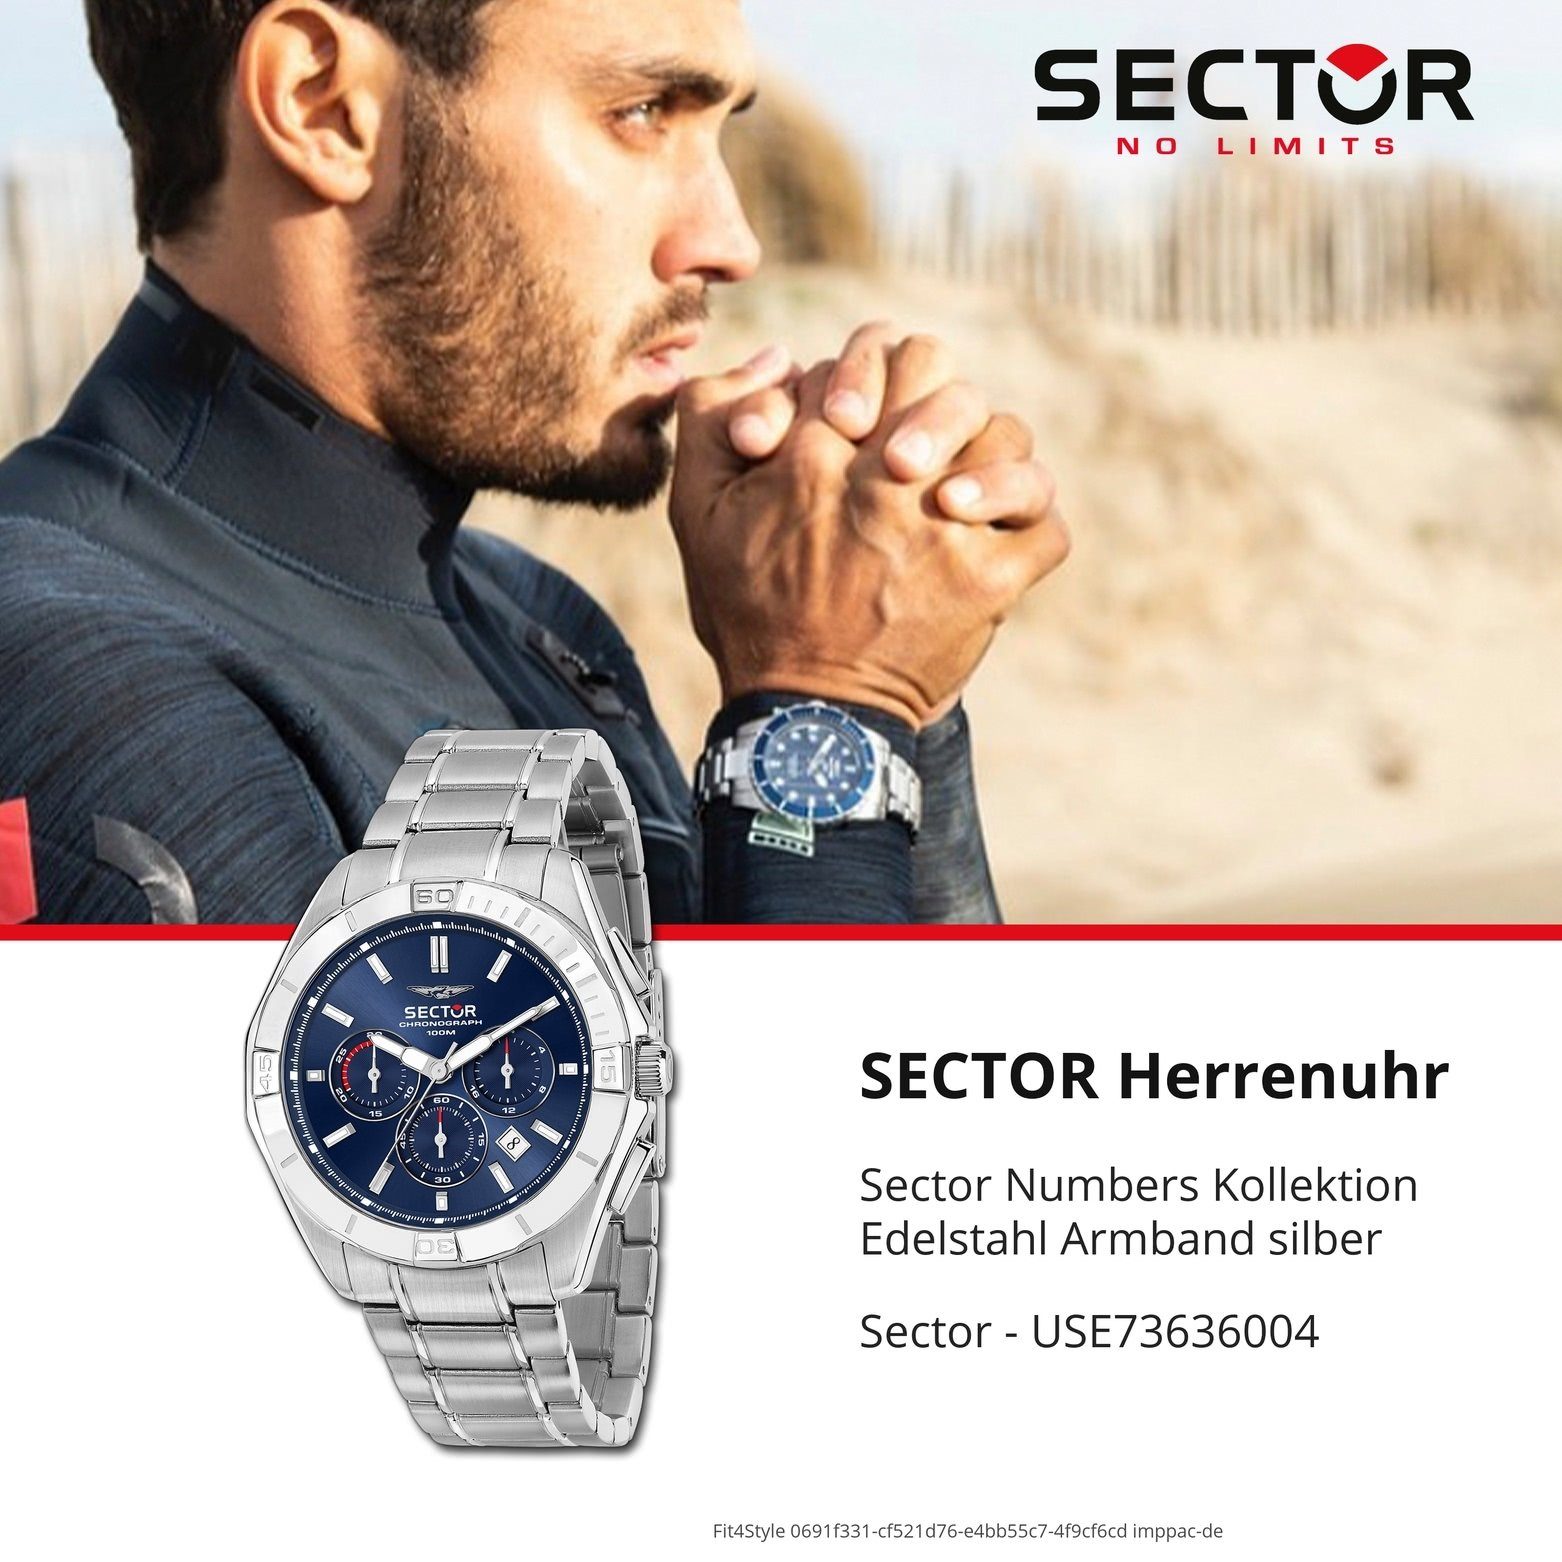 Sector Chronograph Sector Herren rund, Chrono, groß Armbanduhr Edelstahlarmband (48mm), Armbanduhr silber, Fashion Herren